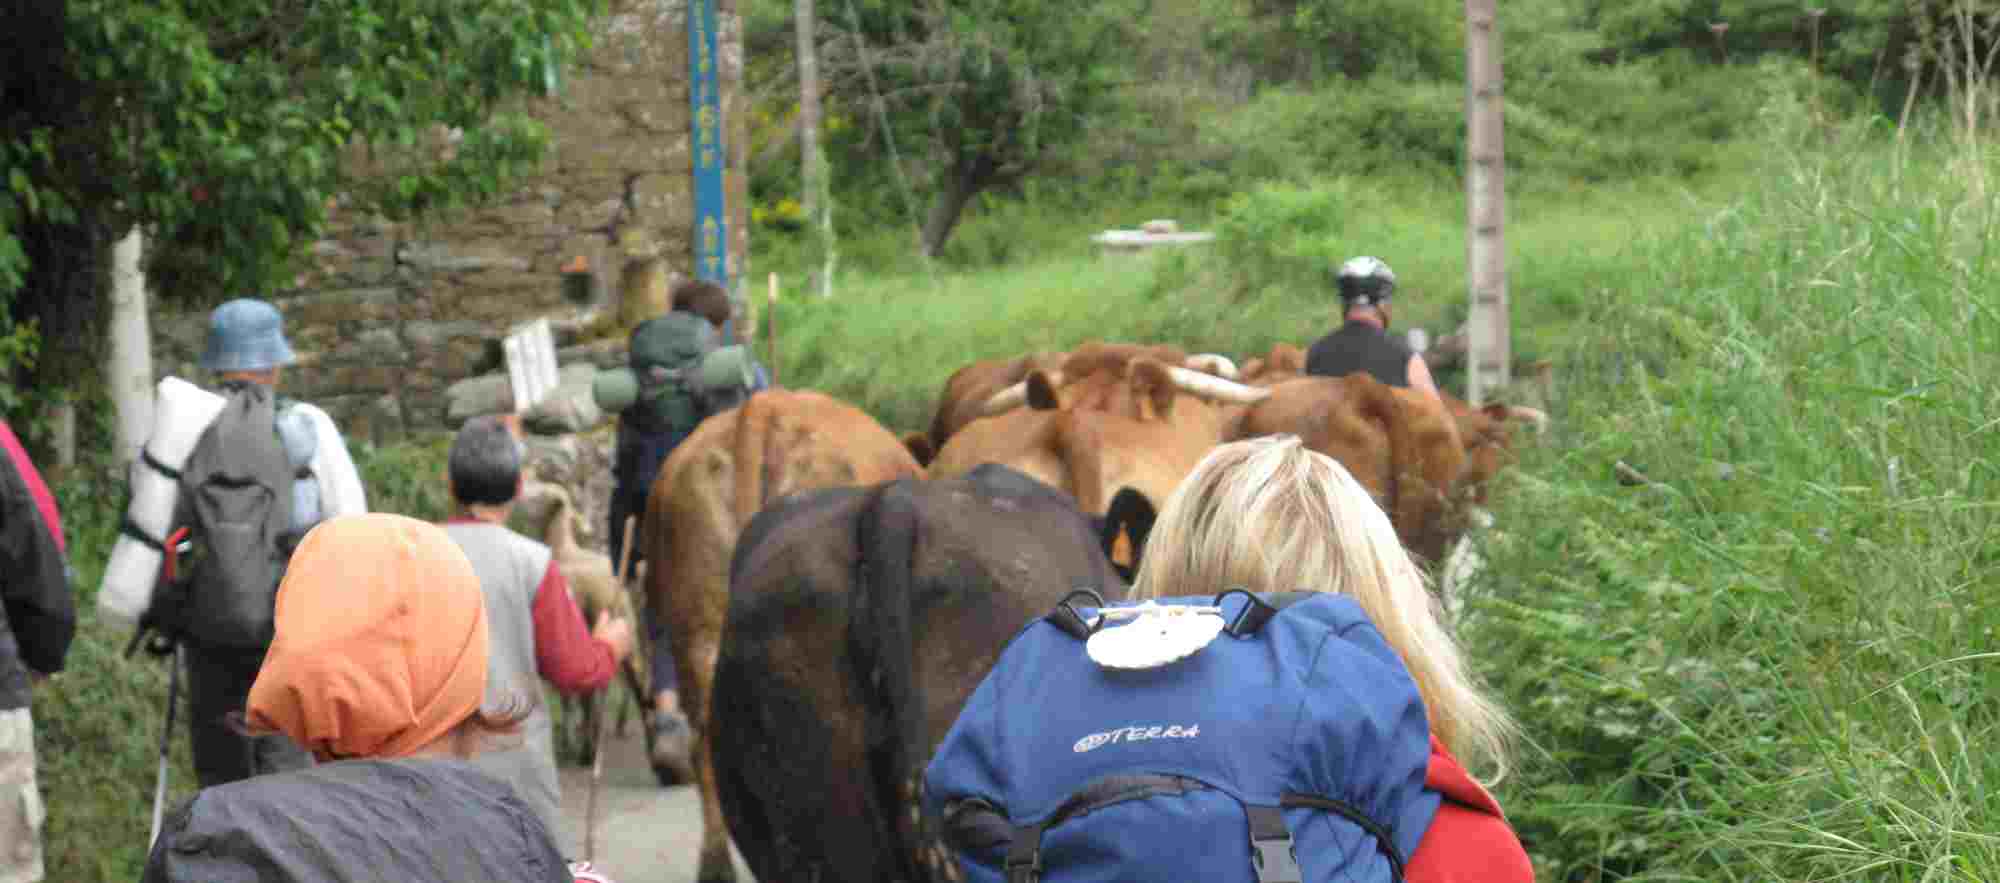 Walkers amongst a herd of cows in the Camino de Santiago